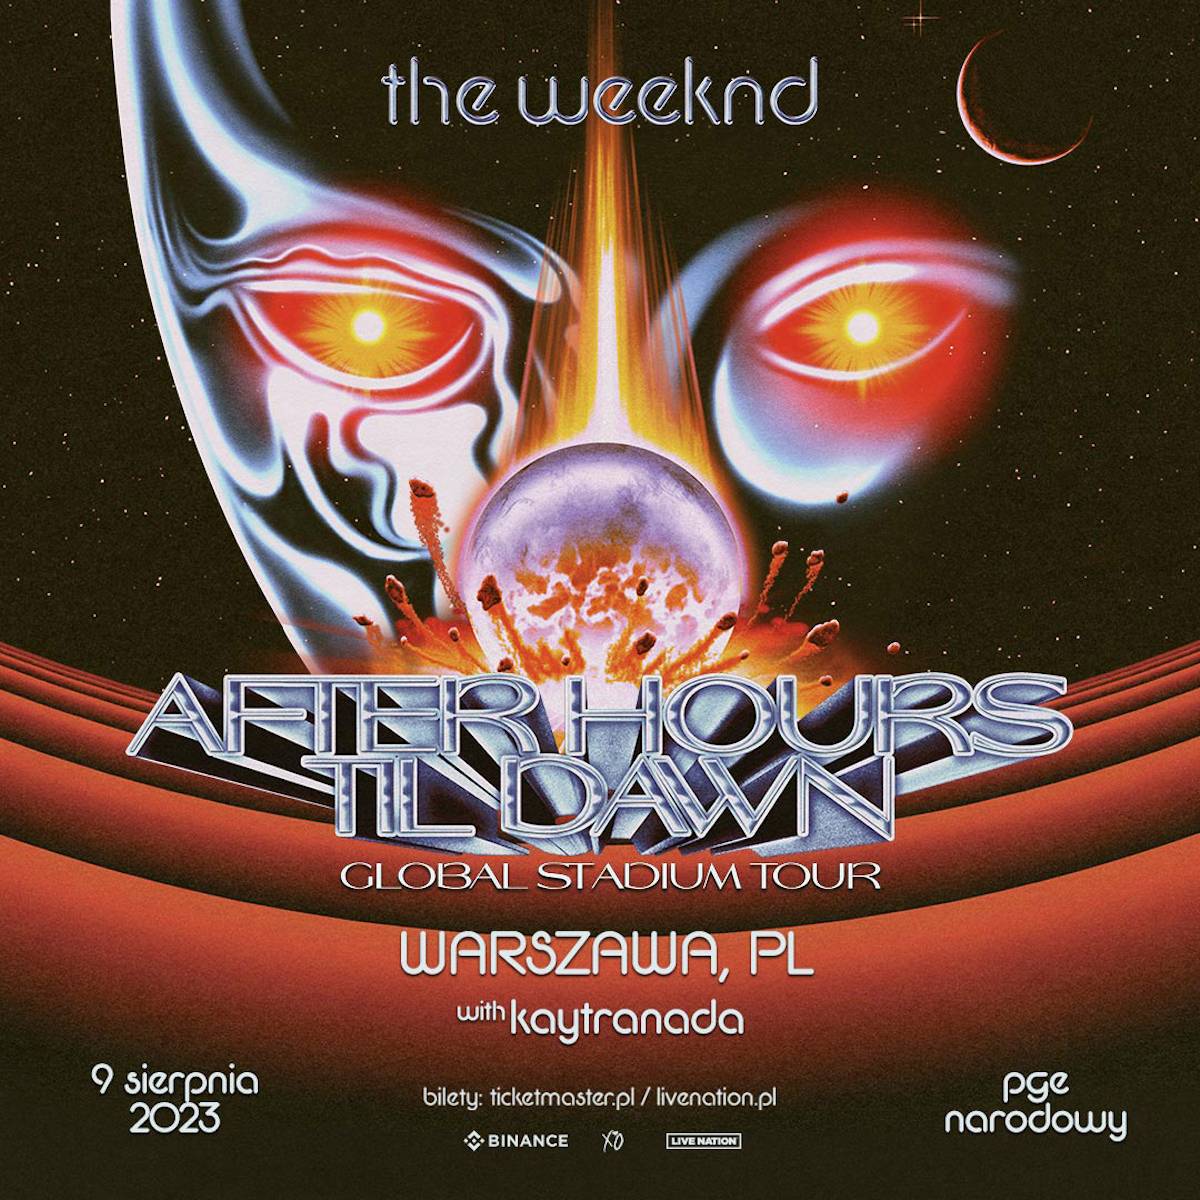 Plakat koncertu The Weeknd w Warszawie w ramach trasy koncertowej After Hours Til Dawn. Koncert odbędzie się 9 sierpnia na Stadionie Narodowym PGE Narodowy w Warszawie. (Fot. materiały prasowe)